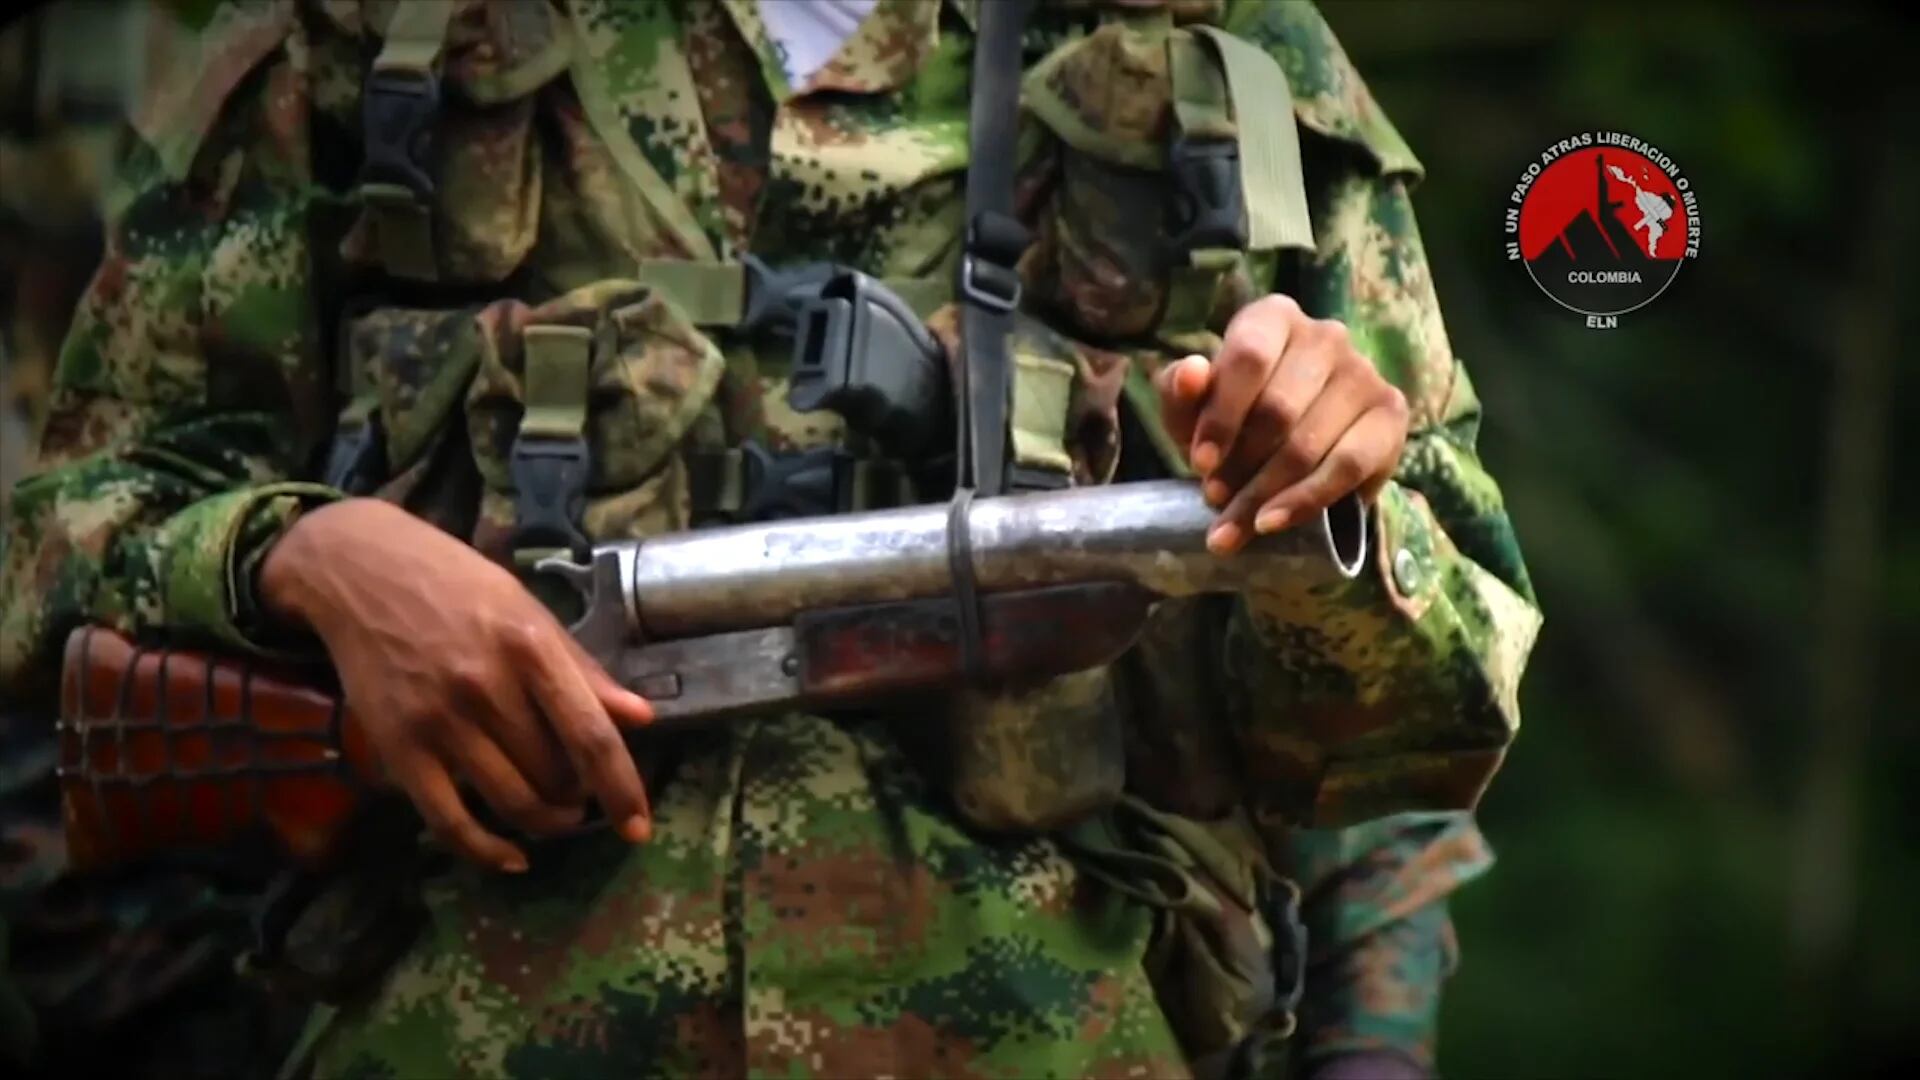 Organizaciones armadas como el ELN, las disidencias de las FARC, el Clan del Golfo y Los Pelusos están reclutando venezolanos ofreciéndoles dinero.